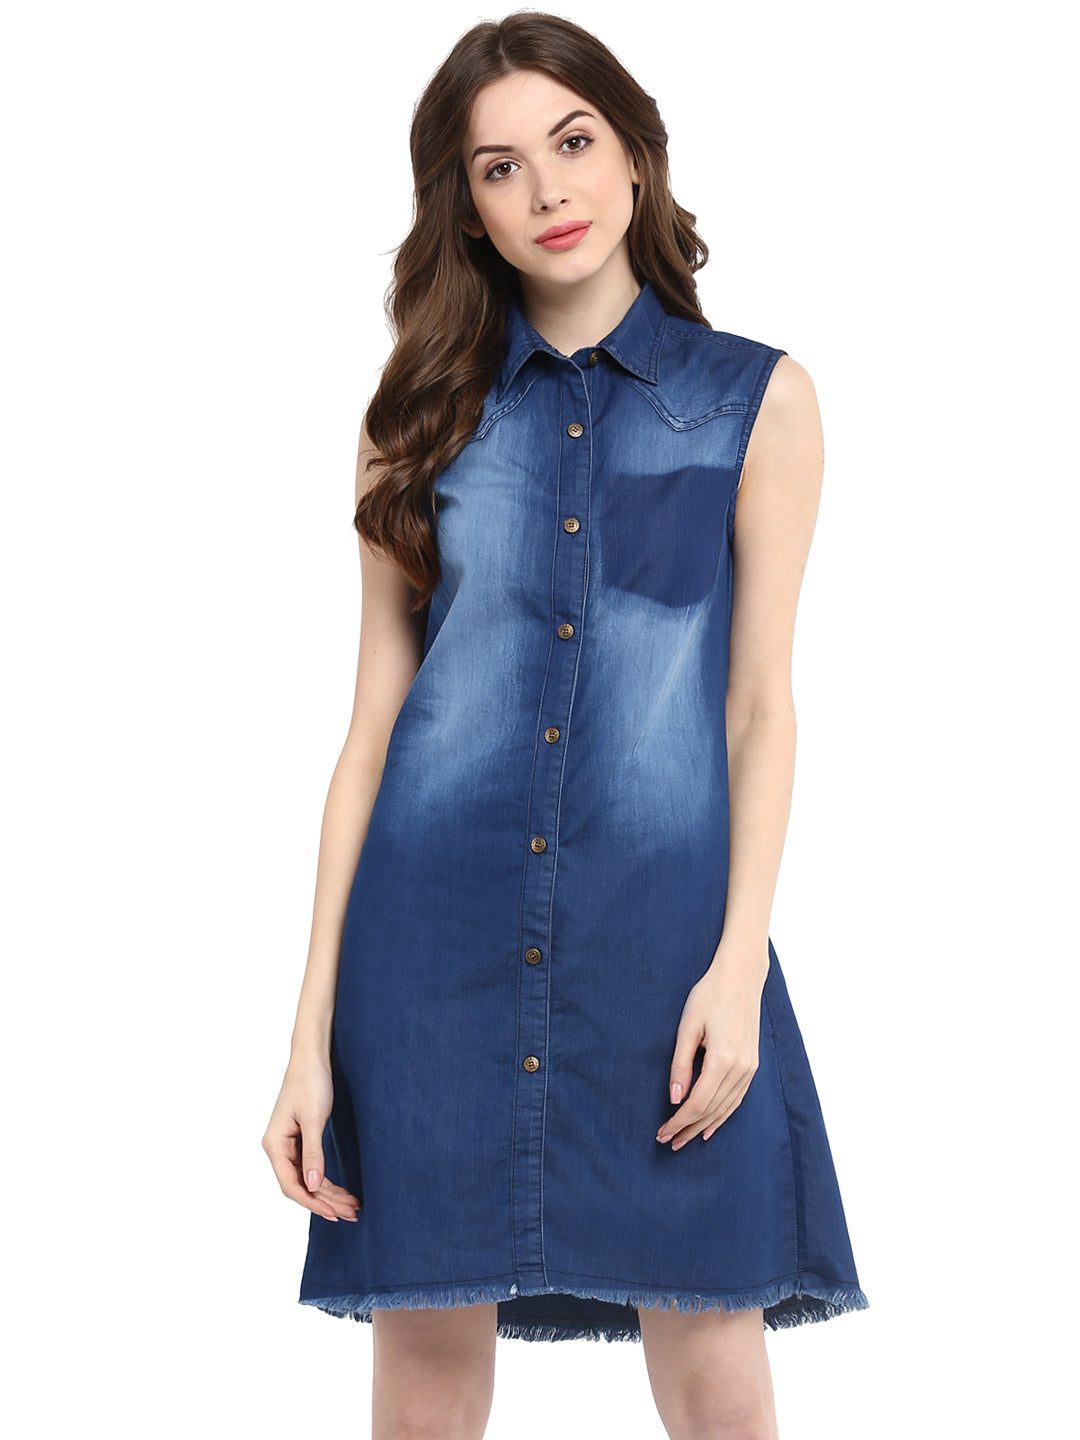 Women's  Blue Dress with Pocket Impression Wash - StyleStone